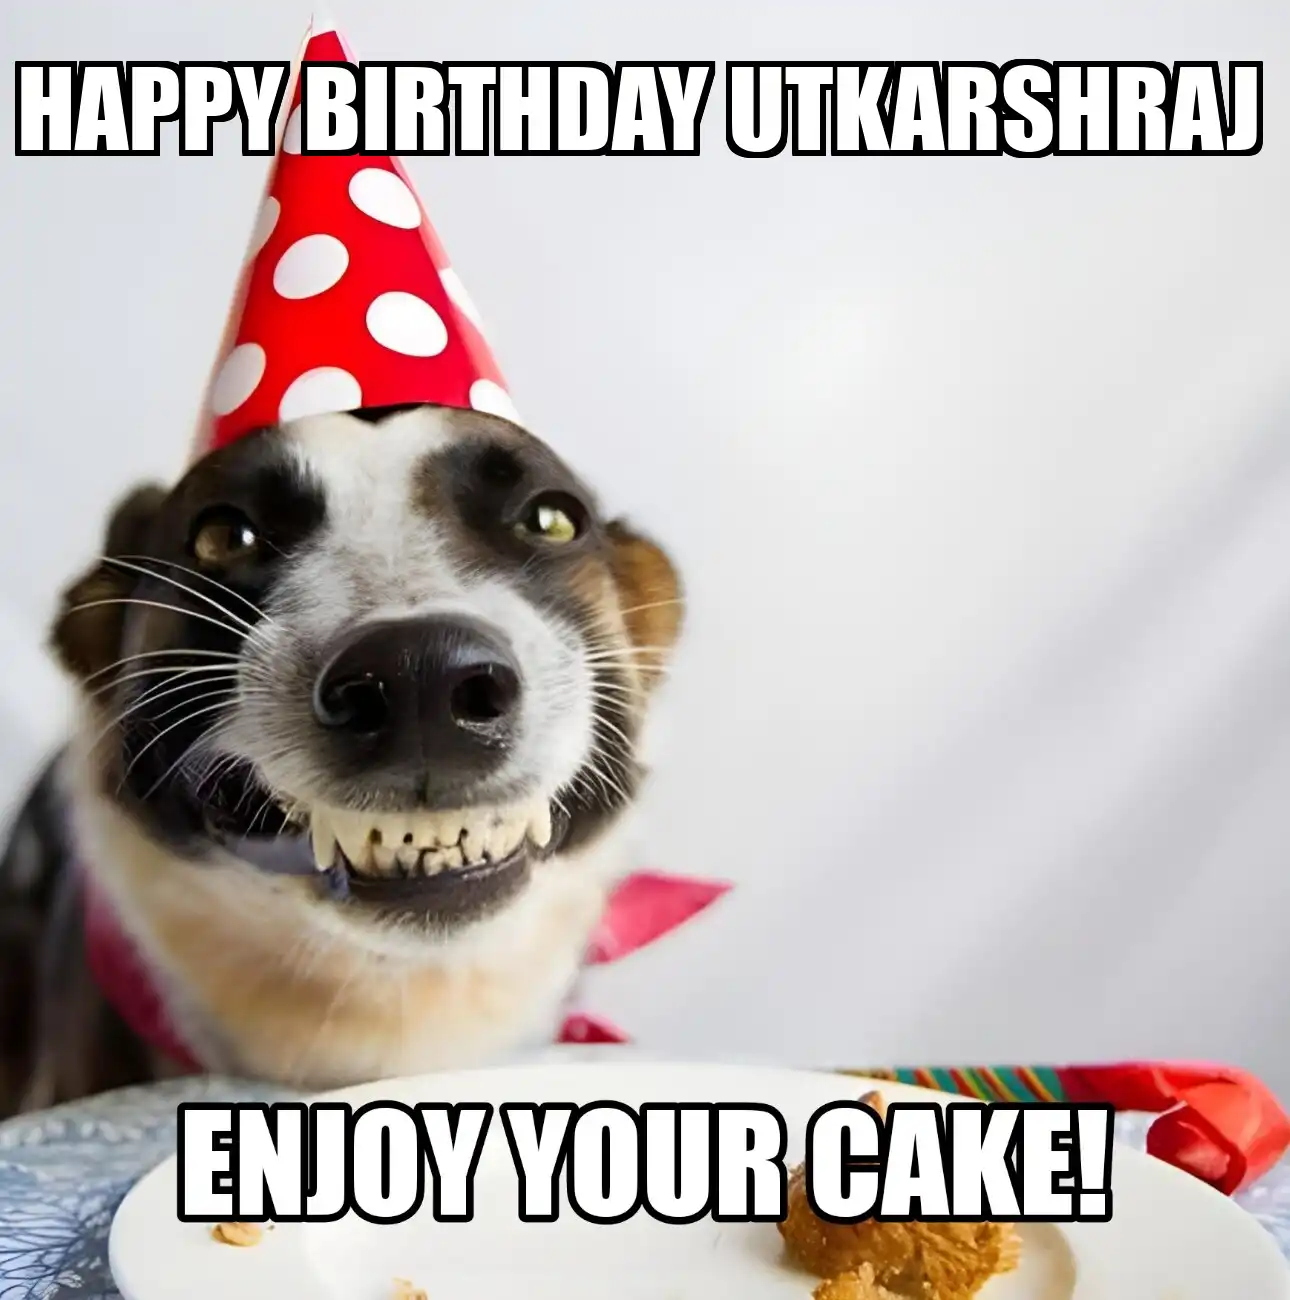 Happy Birthday Utkarshraj Enjoy Your Cake Dog Meme